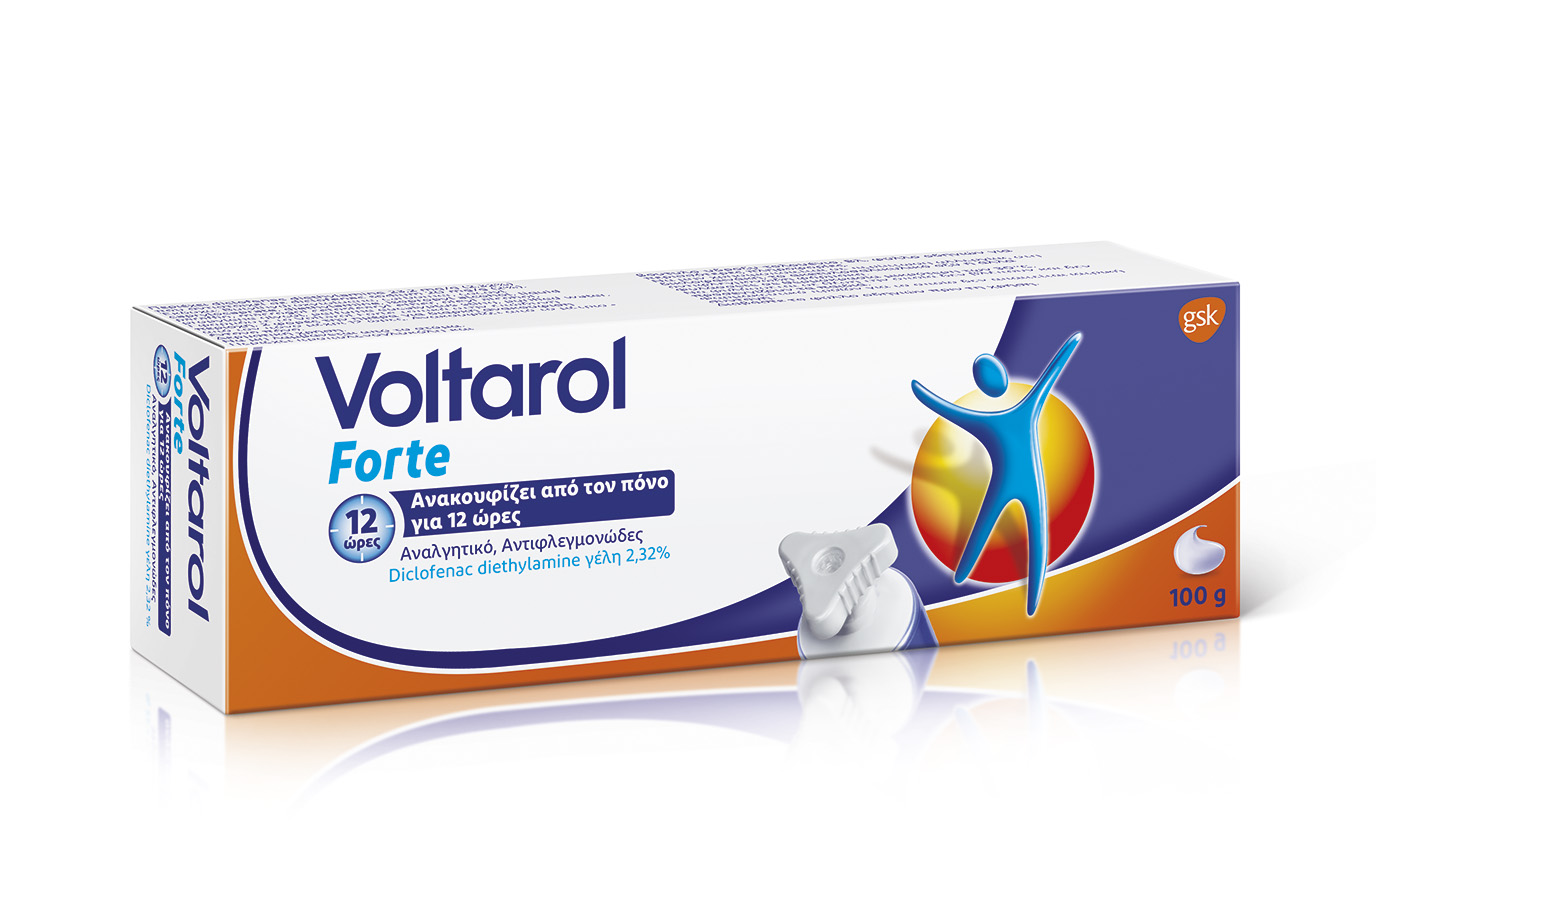 Voltarol Forte 100g